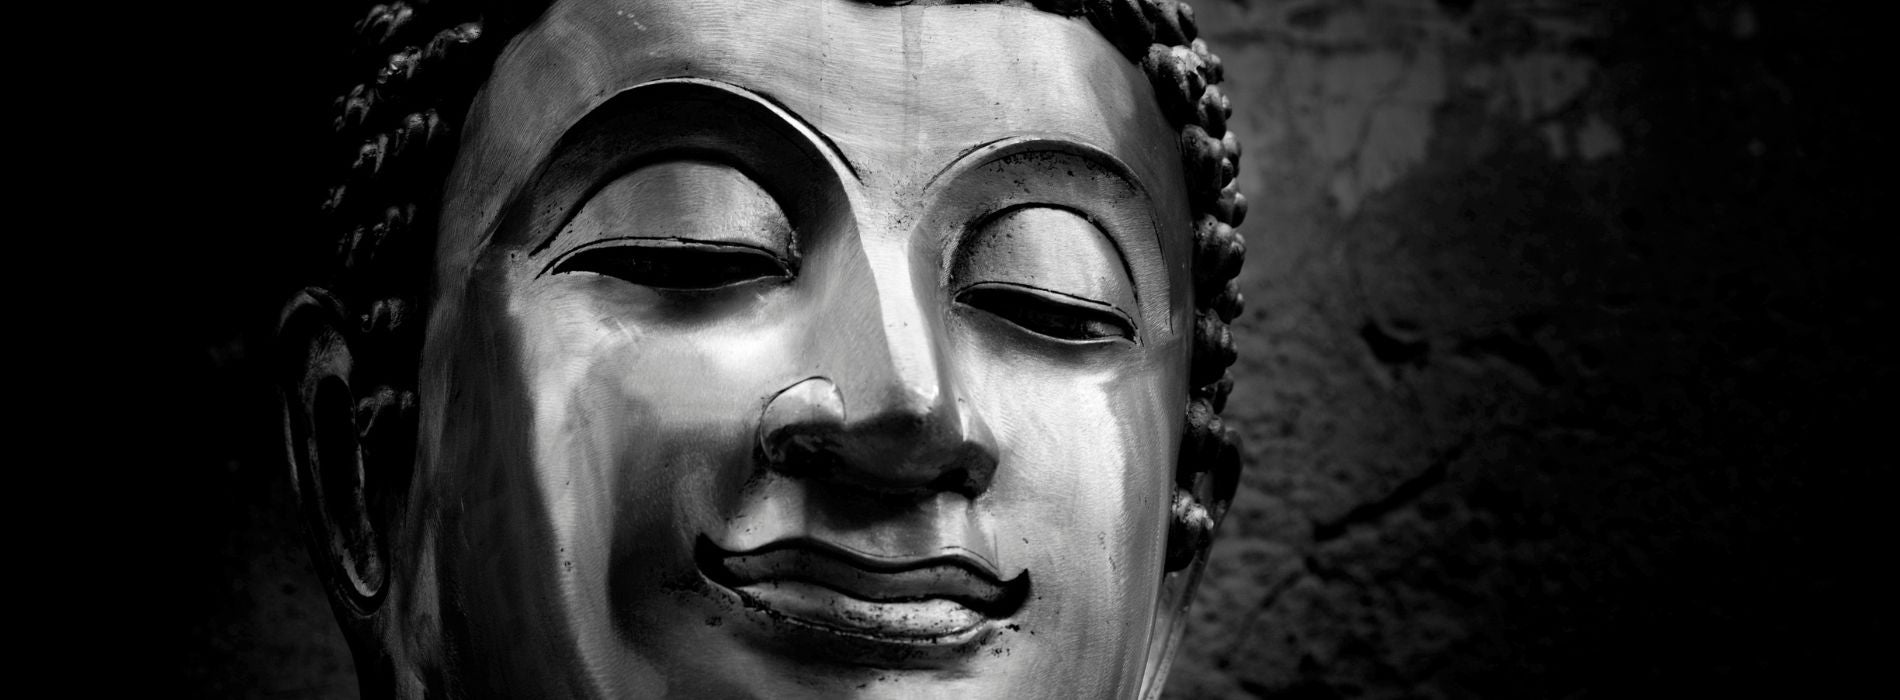 Qui est bouddha pour les bouddhistes ?